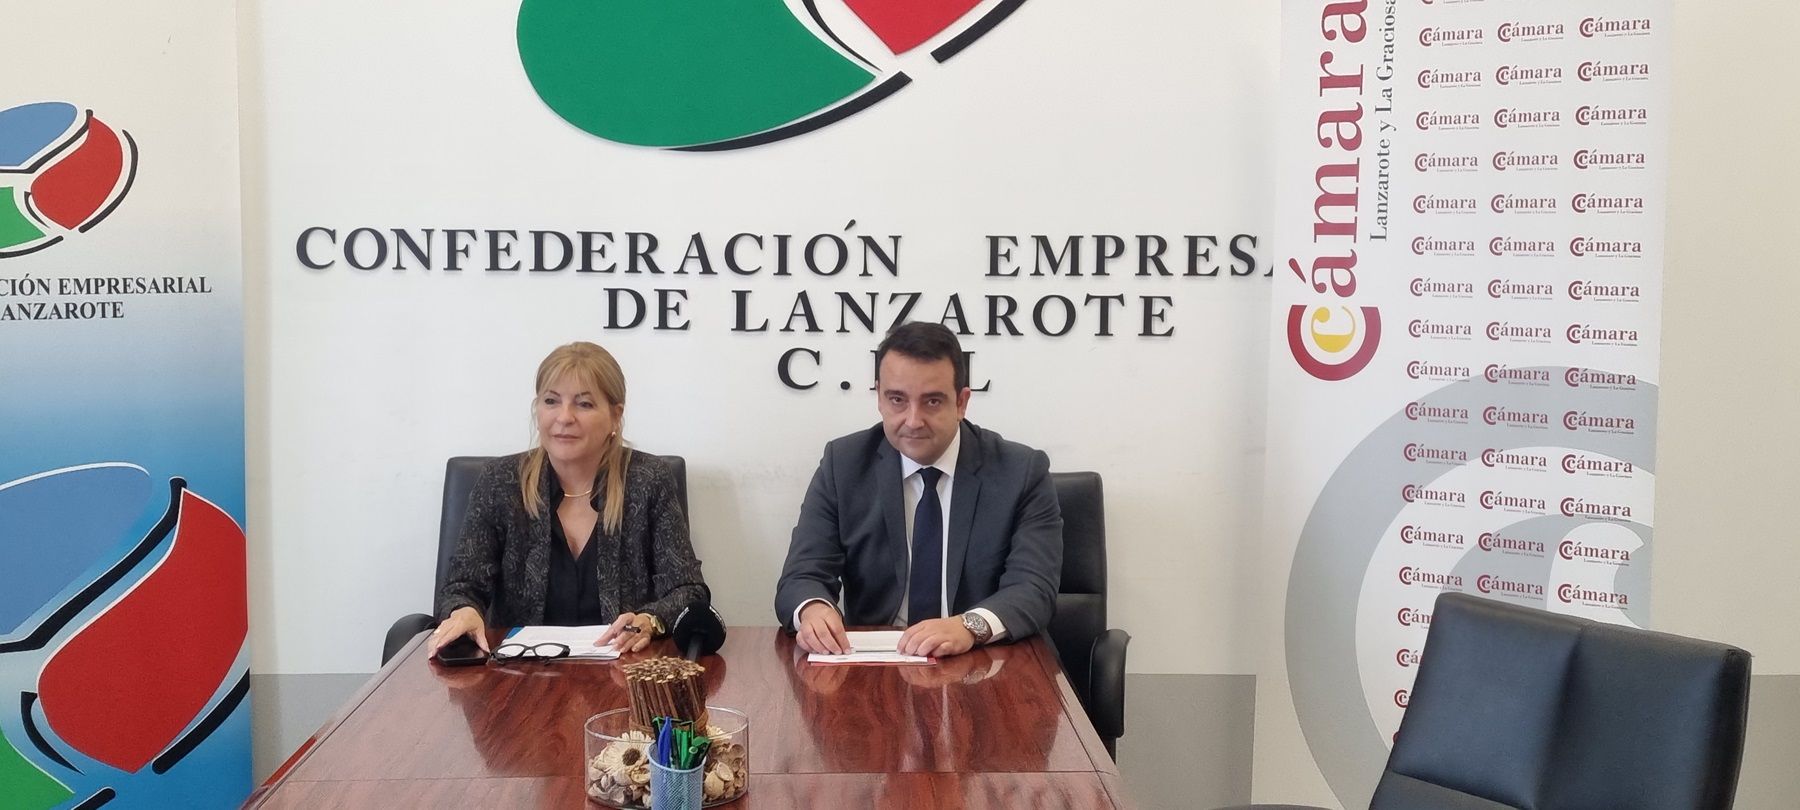 La reunión entre La Confederación Empresarial y la Cámara de Comercio de Lanzarote